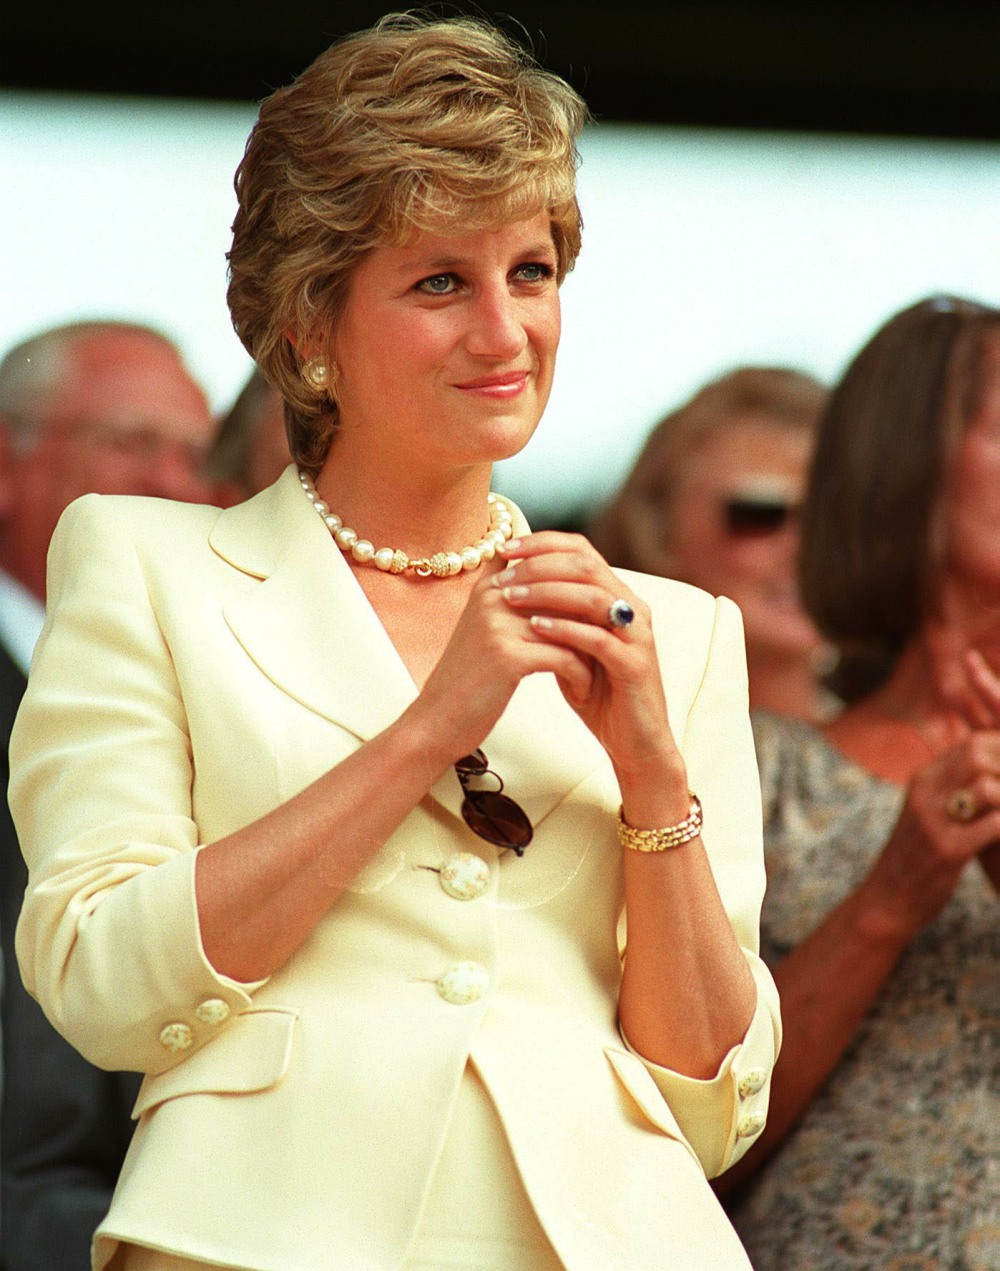 kaltak | Morton: Prens William'ın "Diana'yı öldükten sonra susturmak" istemesi ironik